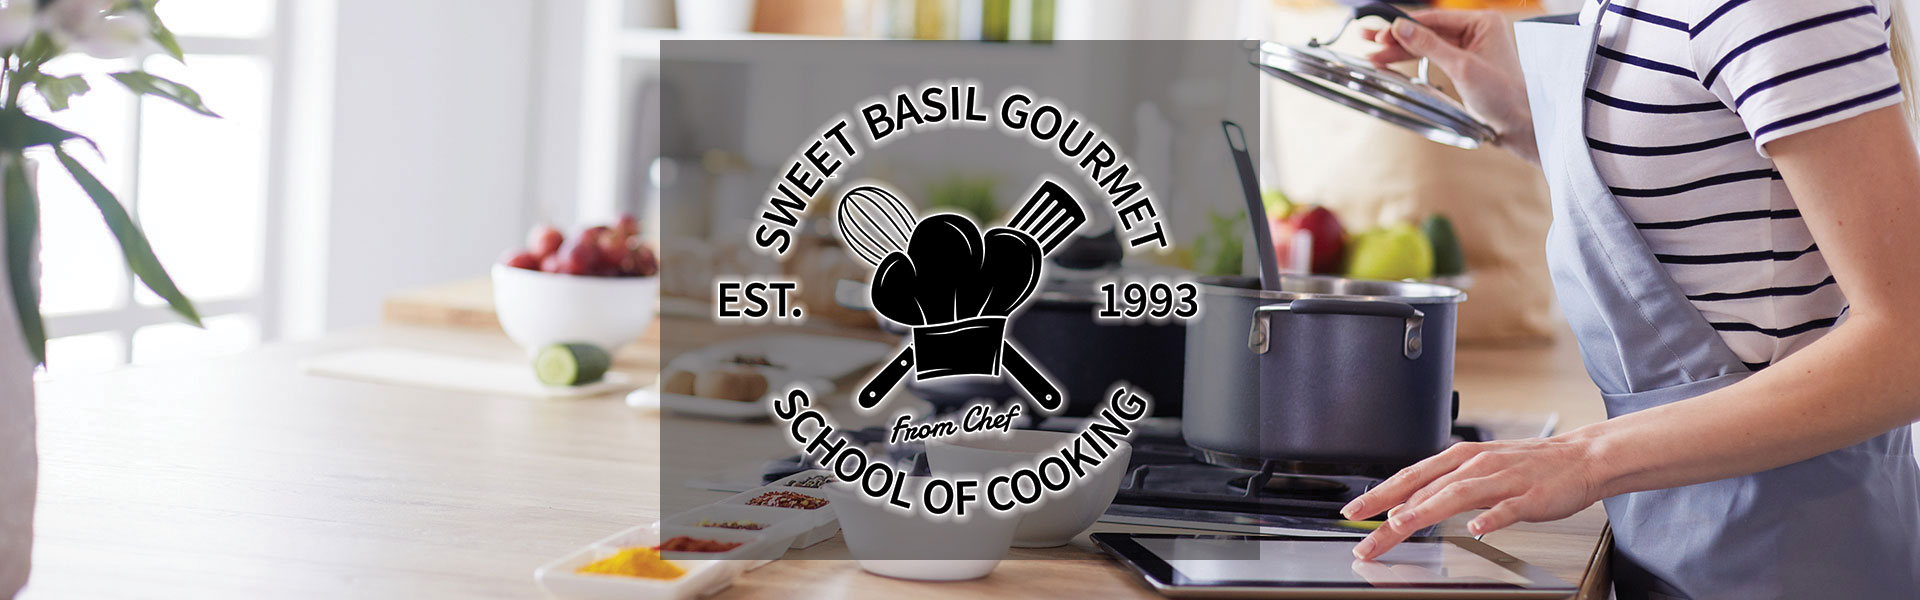 Sweetbasil Gourmet Cooking School of Cooking